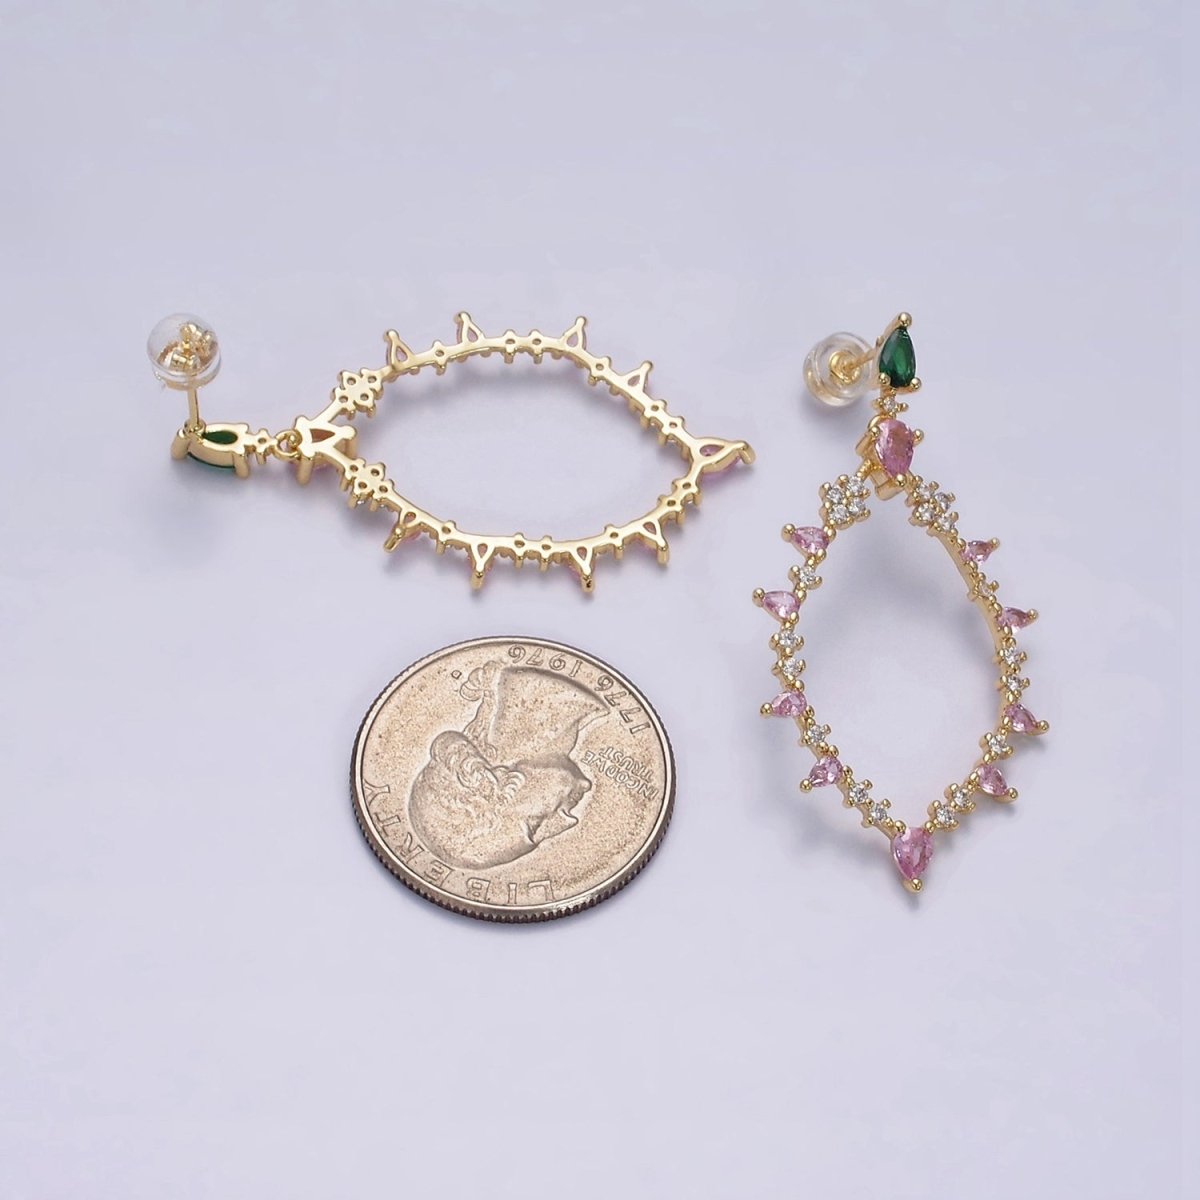 16K Gold Filled Pink CZ Open Rhombus Clear, Green, Fuchsia, Pink, Purple, Blue Teardrop Stud Earrings in Gold & Silver | AE560 - AE571 - DLUXCA